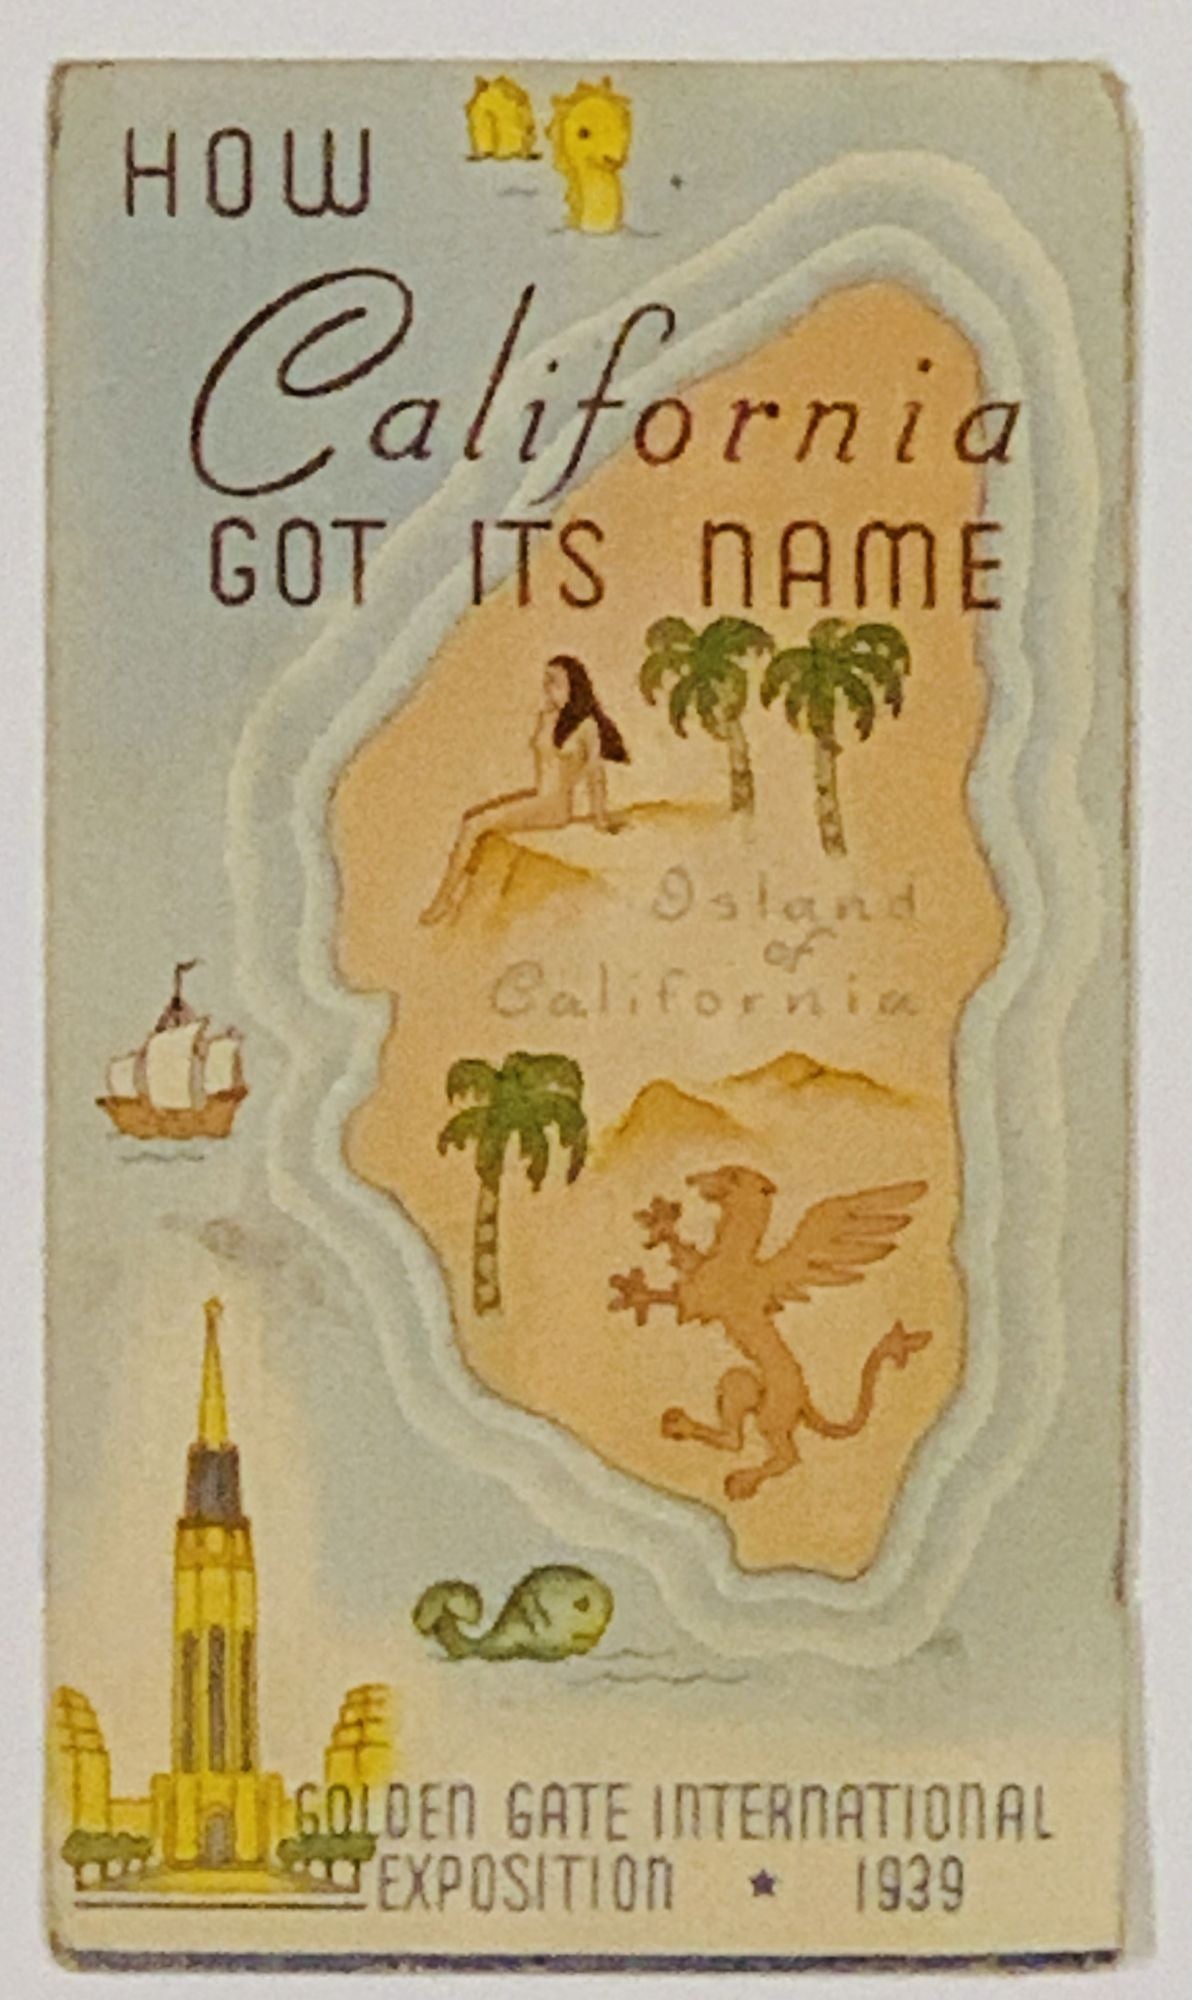 [World's Fair / Golden Gate Exposition] - HOW CALIFORNIA GOT ITS NAME. Golden Gate International Exposition. 1939